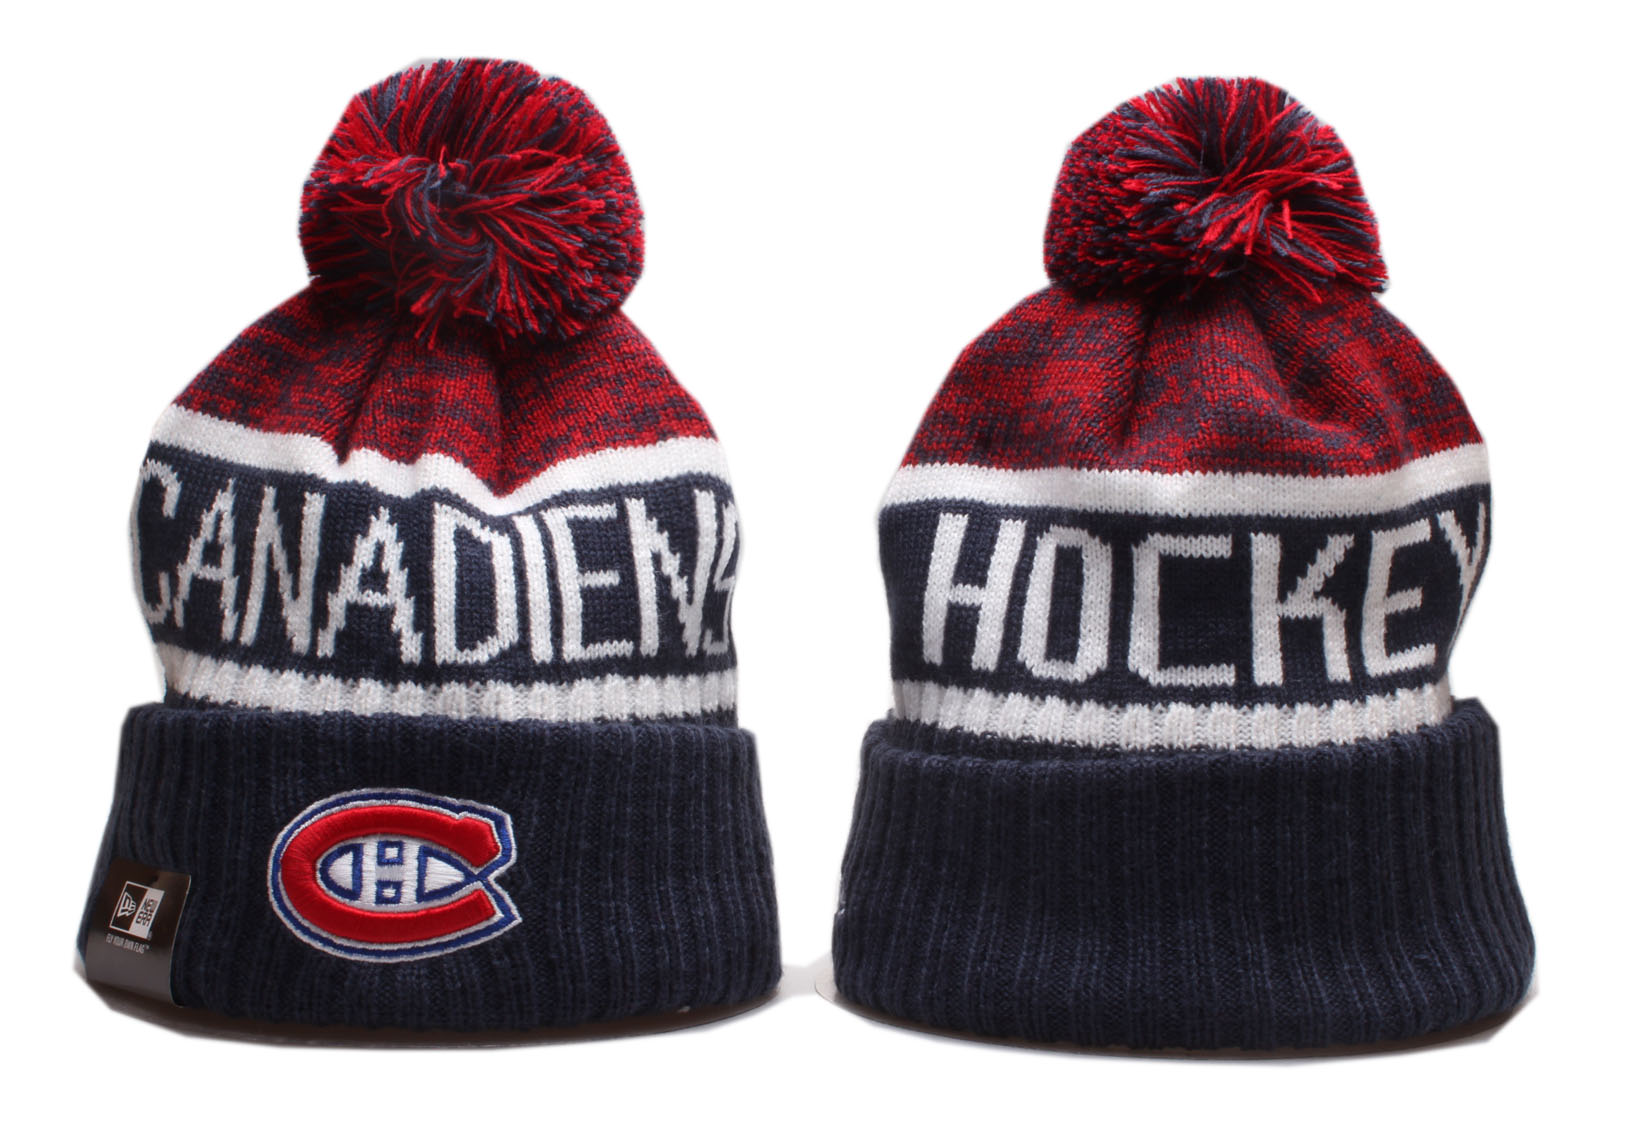 Canadiens Team Logo Cuffed Pom Knit Hat YP